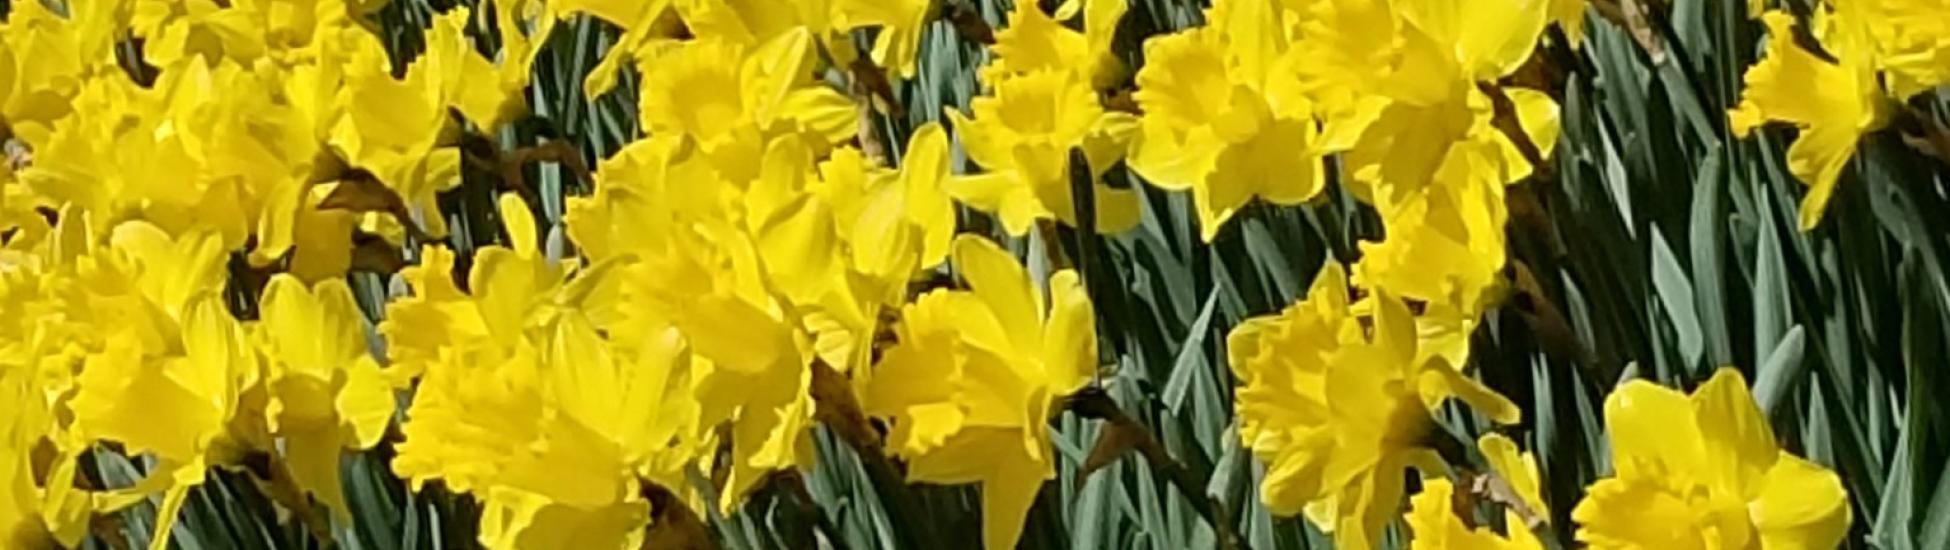 ferry road daffodils